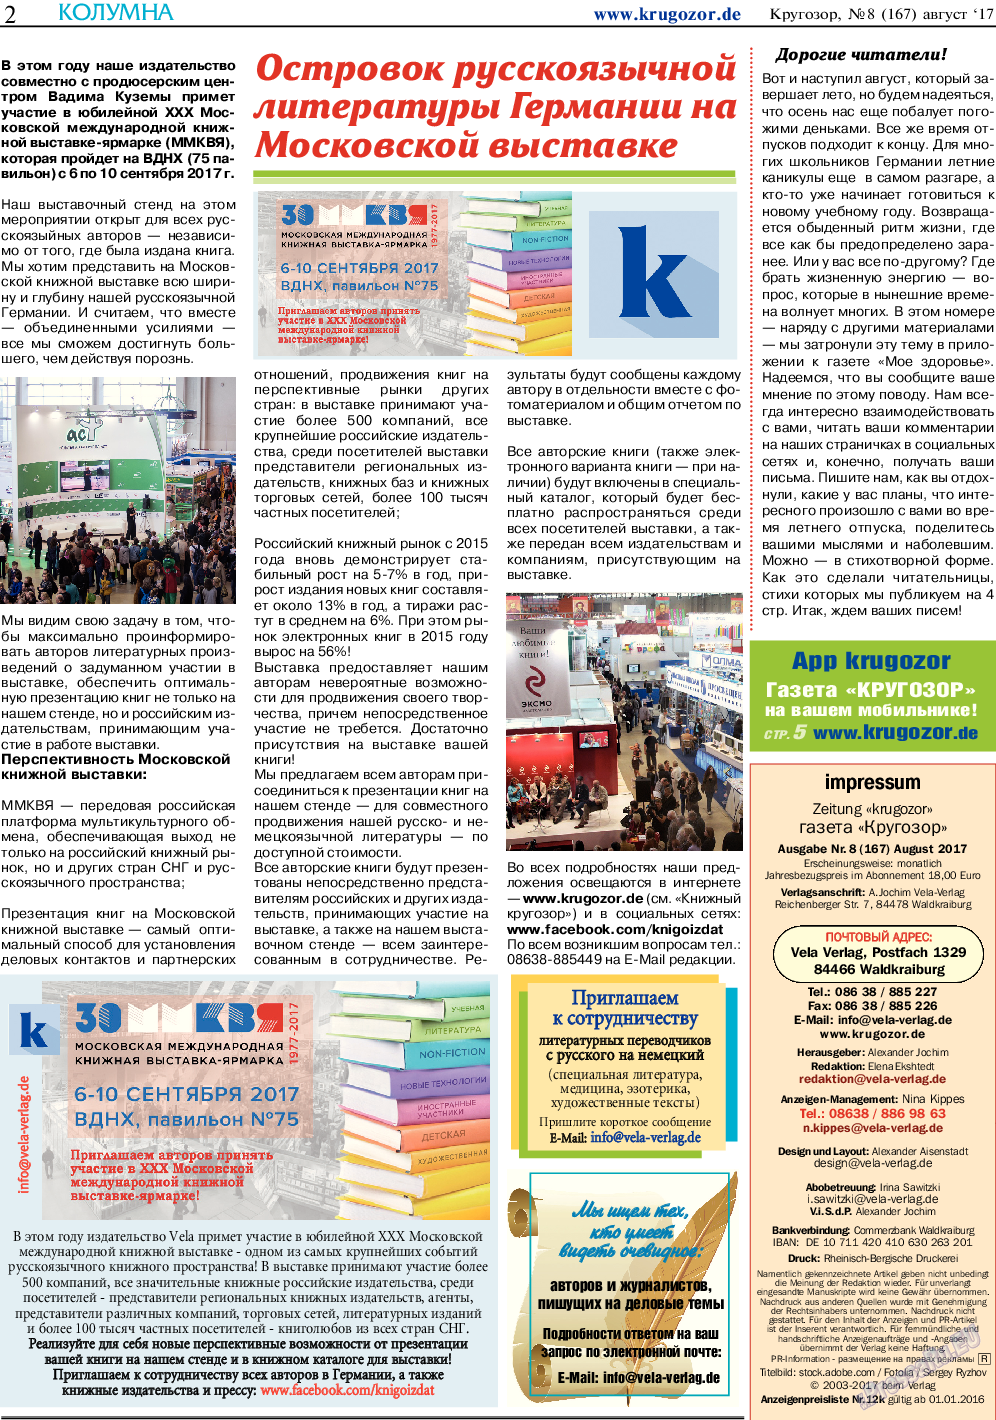 Кругозор, газета. 2017 №8 стр.2